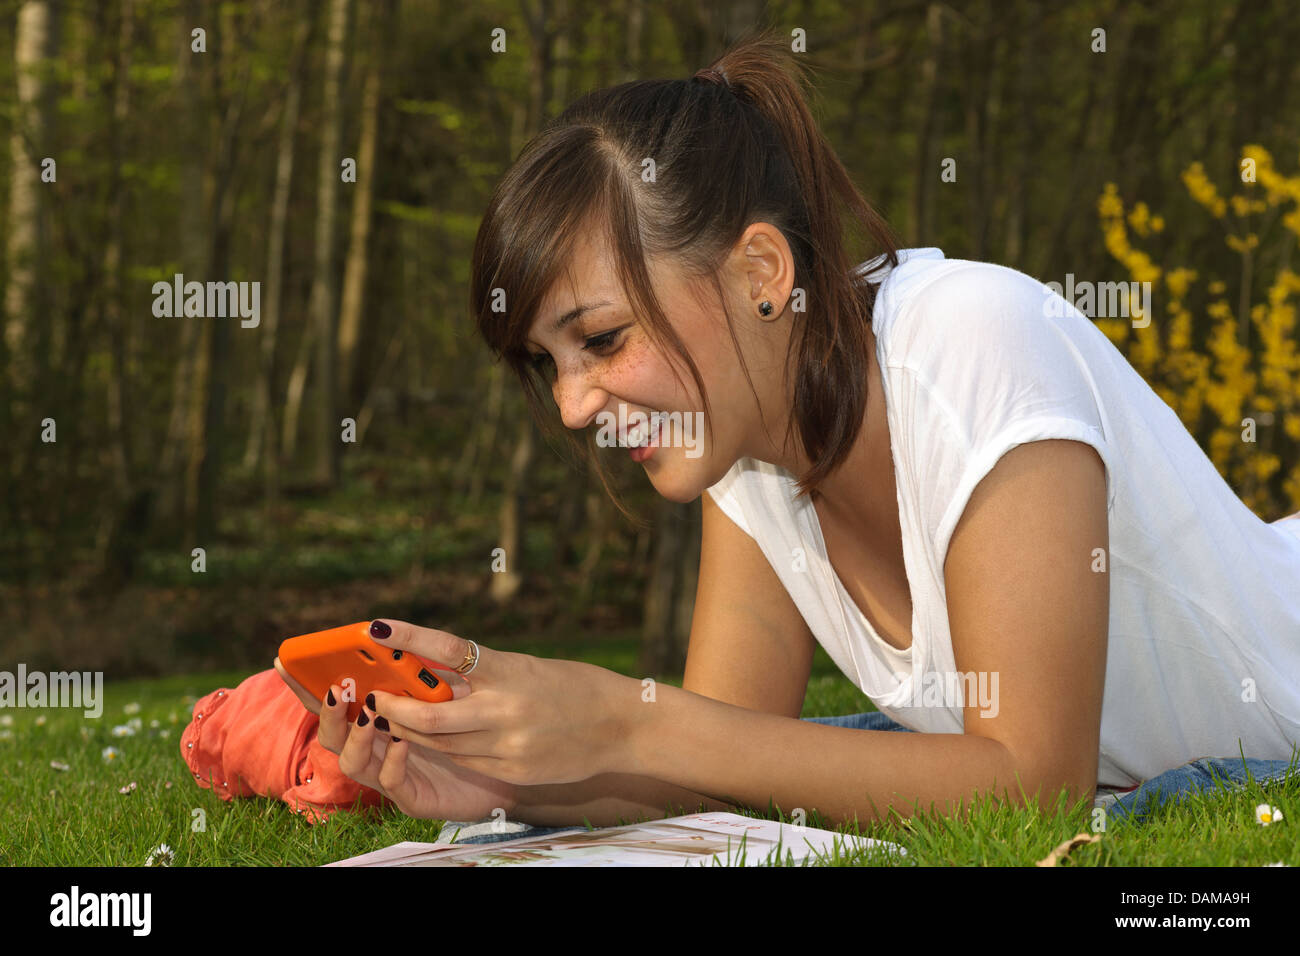 Allemagne, Baden Wuerttemberg, jeune femme de la saisie de sms et de jouer sur le téléphone Banque D'Images